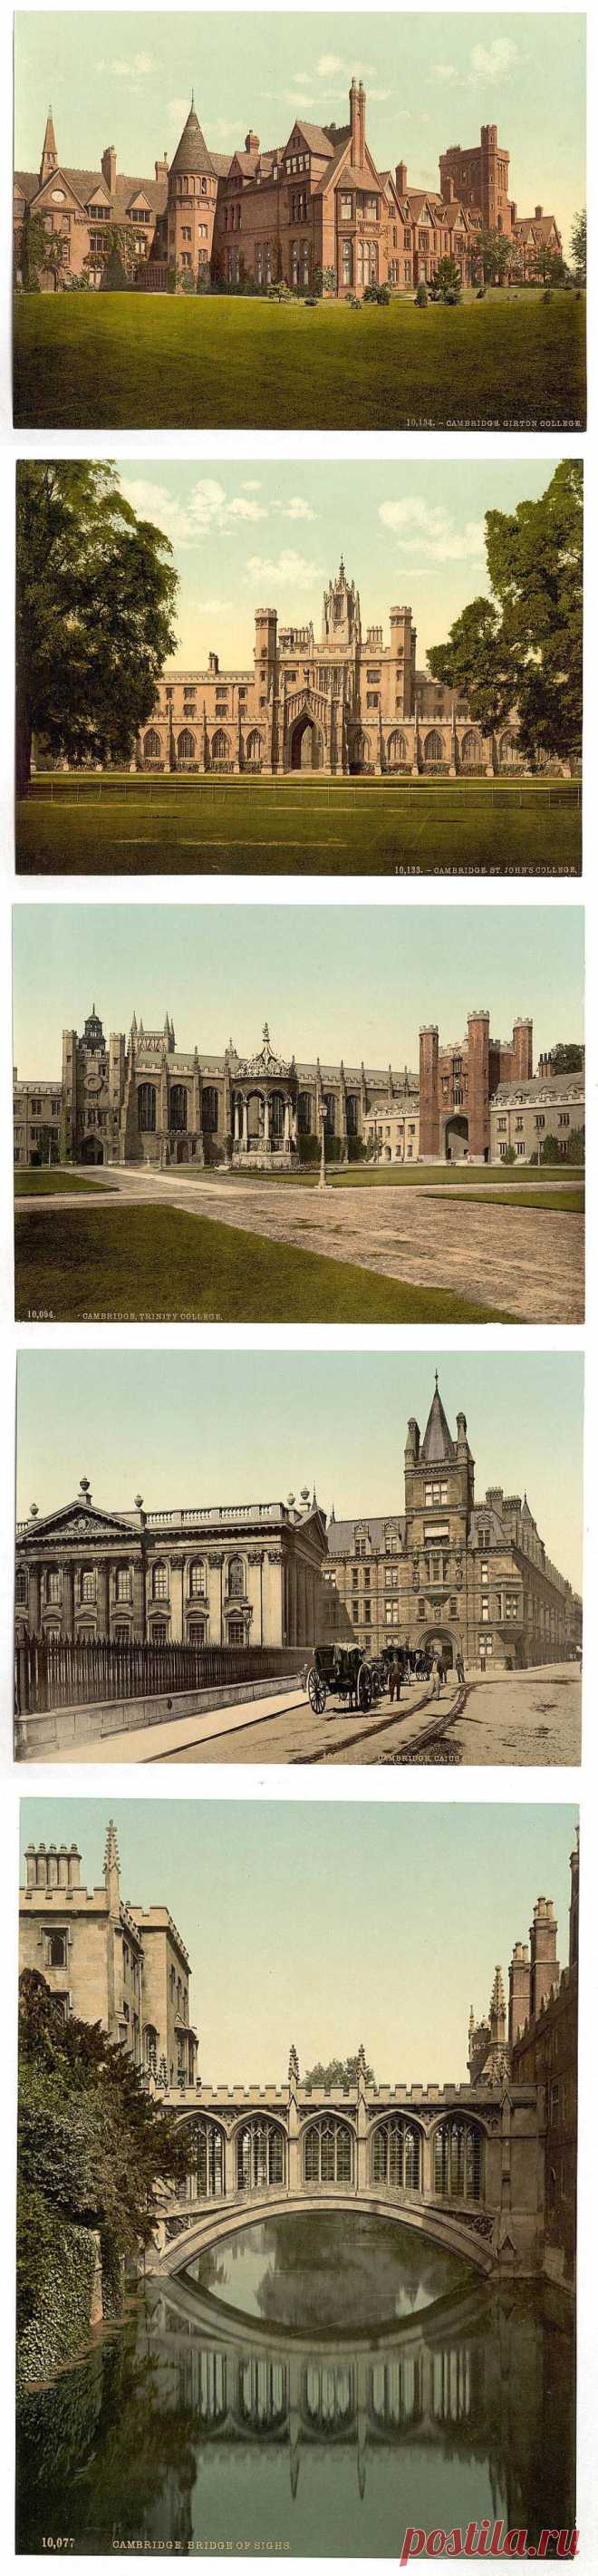 Ретро фотографии Кембриджа. Англия в 1890-1900 годах | Newpix.ru - позитивный интернет-журнал